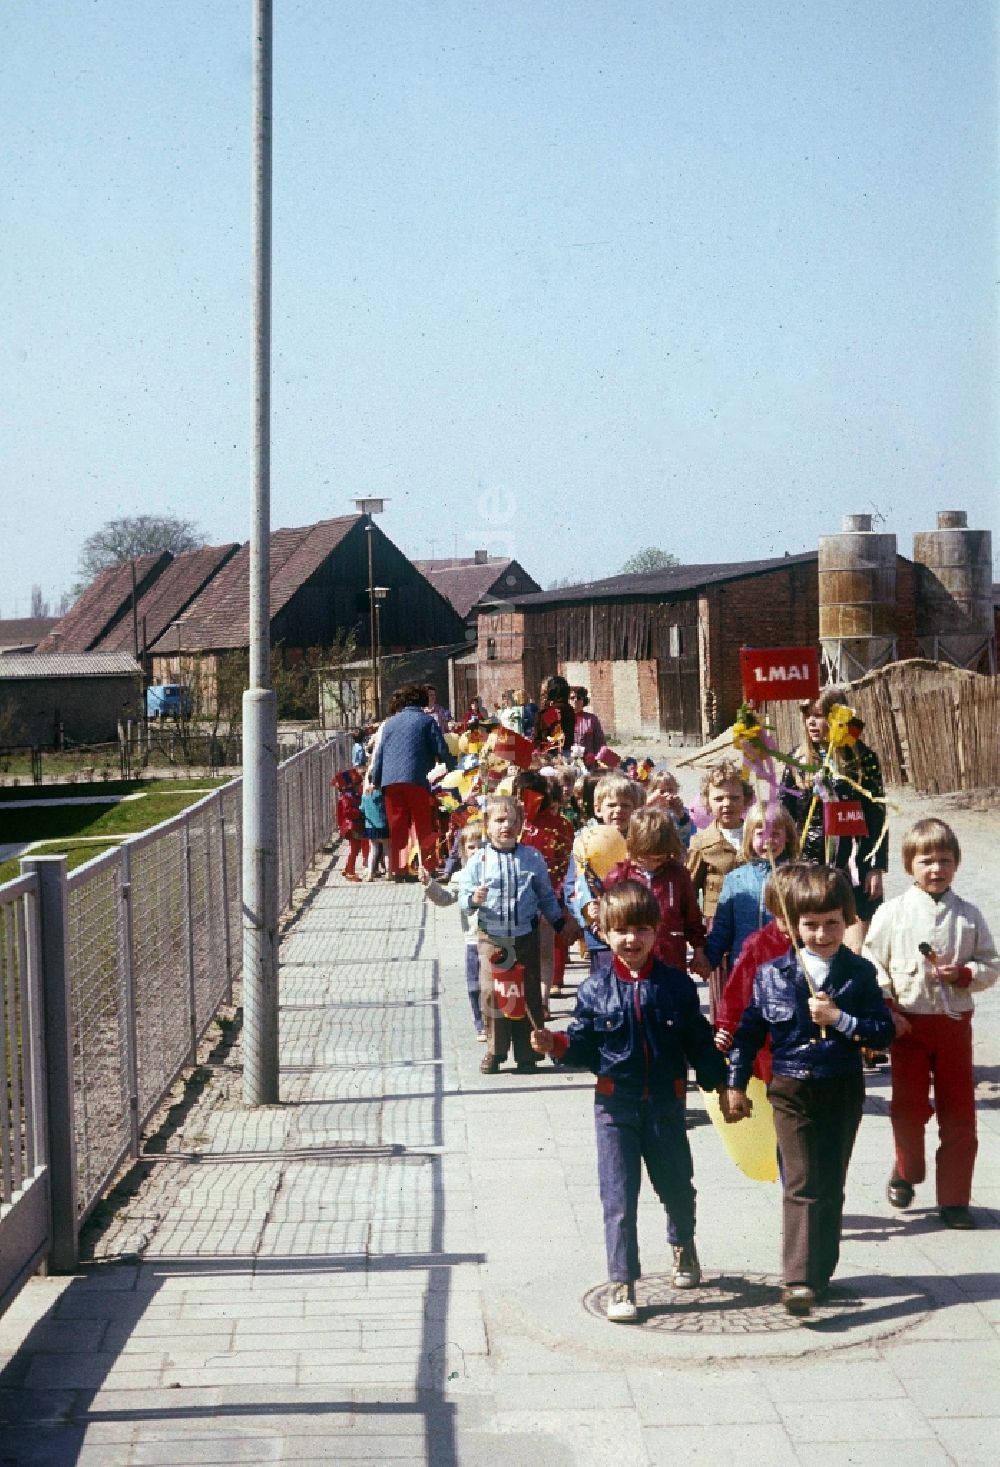 Neustrelitz: Eine Kindergartengruppe, mit Luftballons und Fähnchen, auf dem Weg zur 1. Mai Demonstration in Neustrelitz in Mecklenburg-Vorpommern in der DDR